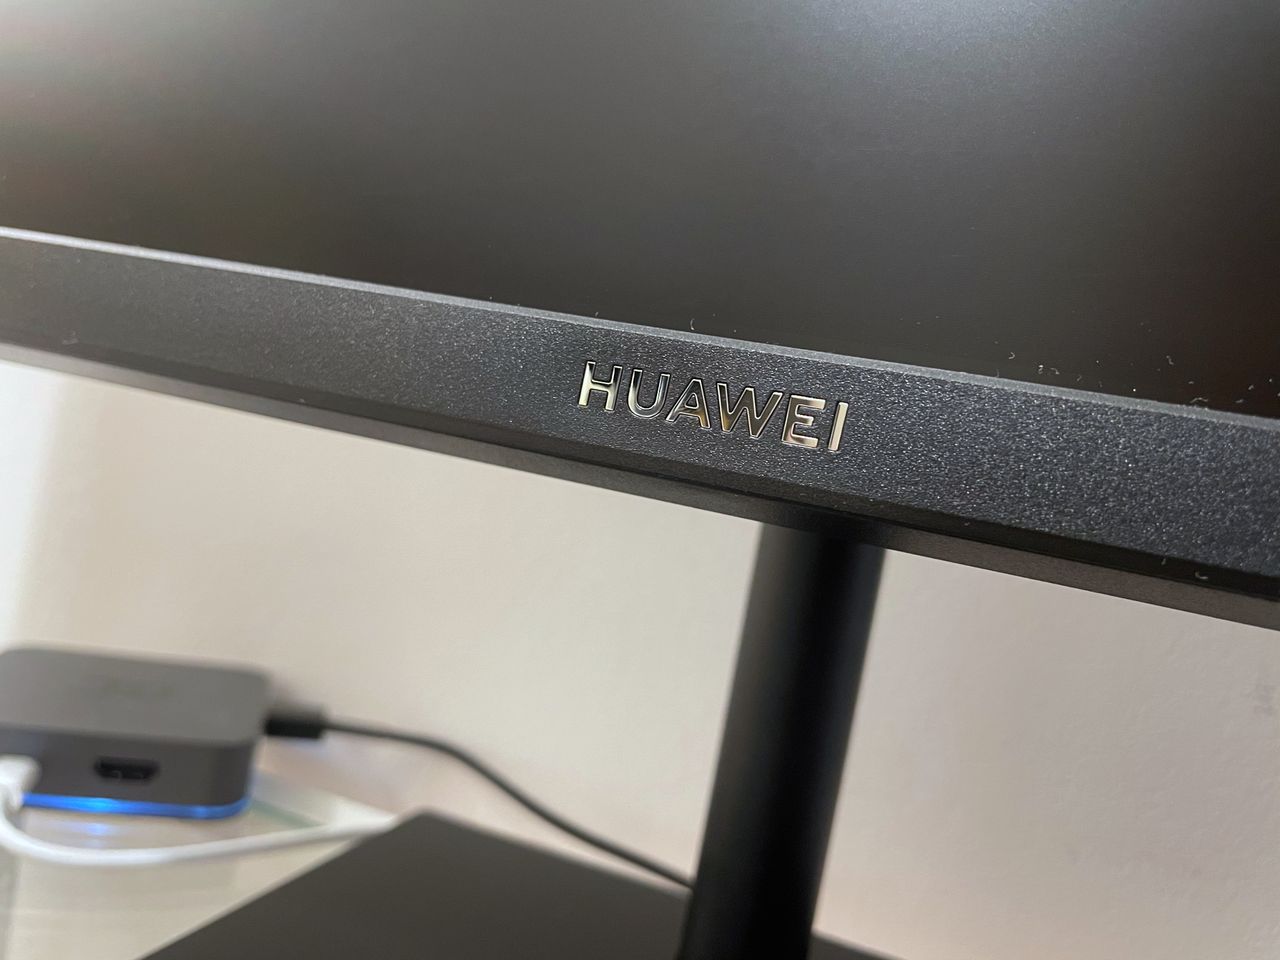 Huawei Display 23.8'' AD80HW – test monitora. Nudnawo, ale zaskakująco solidnie